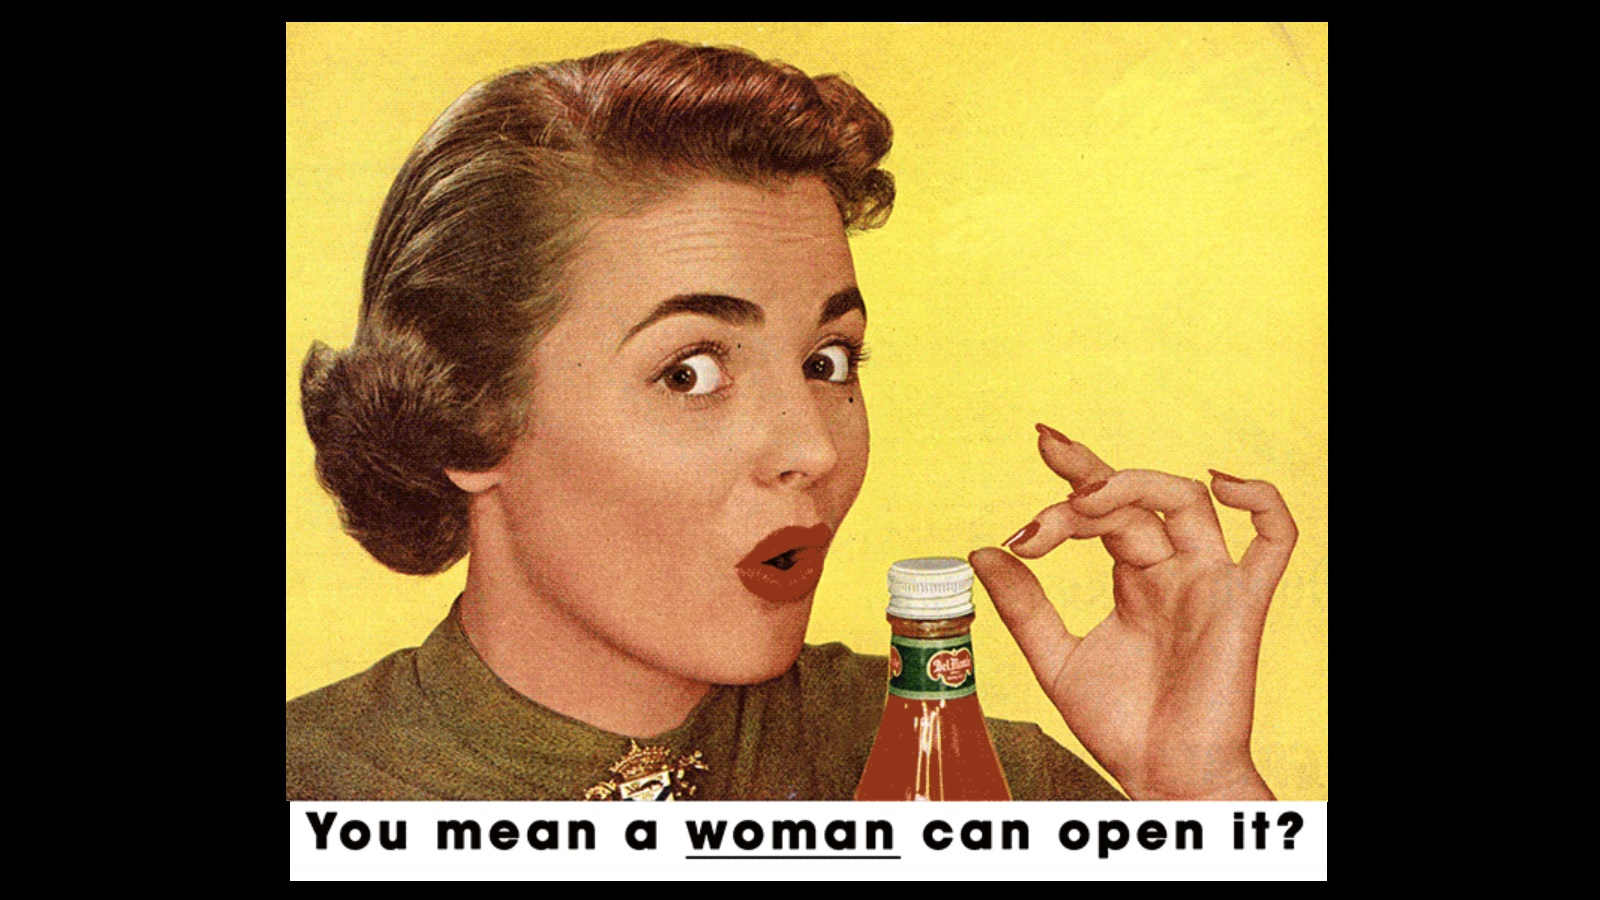 Vintage Ads Turned ‘Upside-Down’ to Underline Sexism